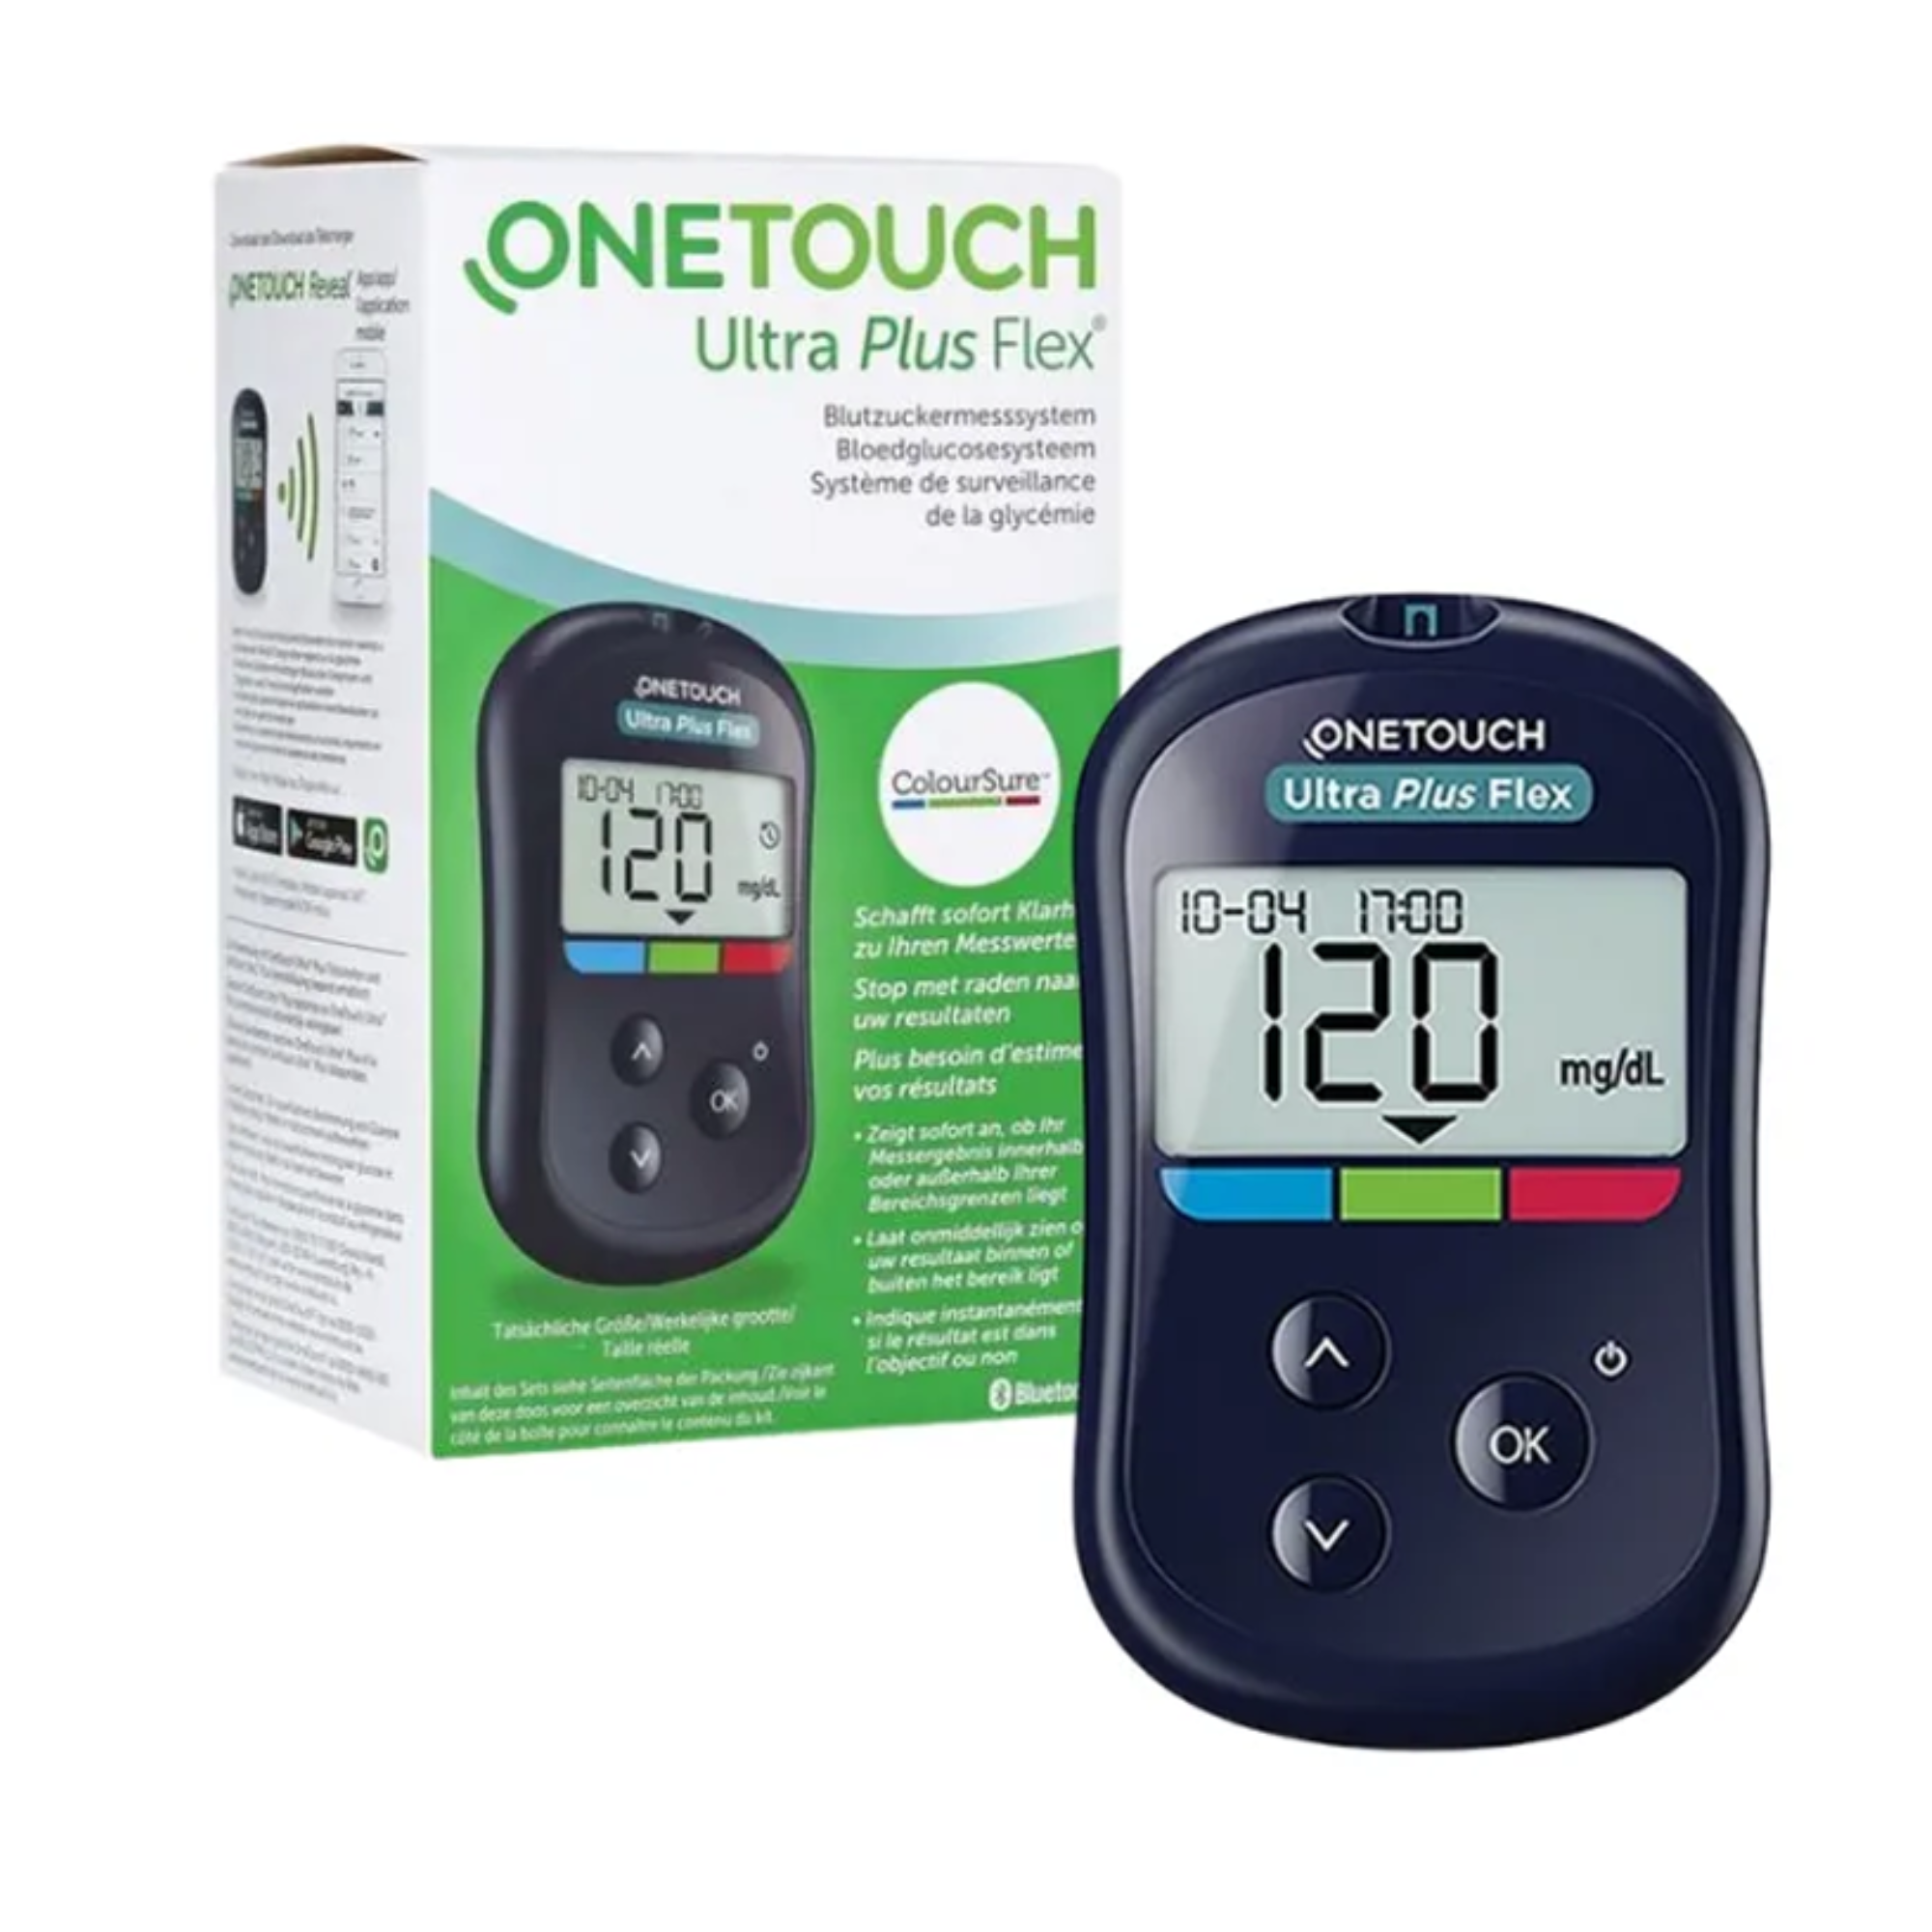 Máy đo đường huyết tiểu đường One Touch Ultra Plus Flex (Onetouch) Loại xịn, bền, hay dùng tại các phòng khám